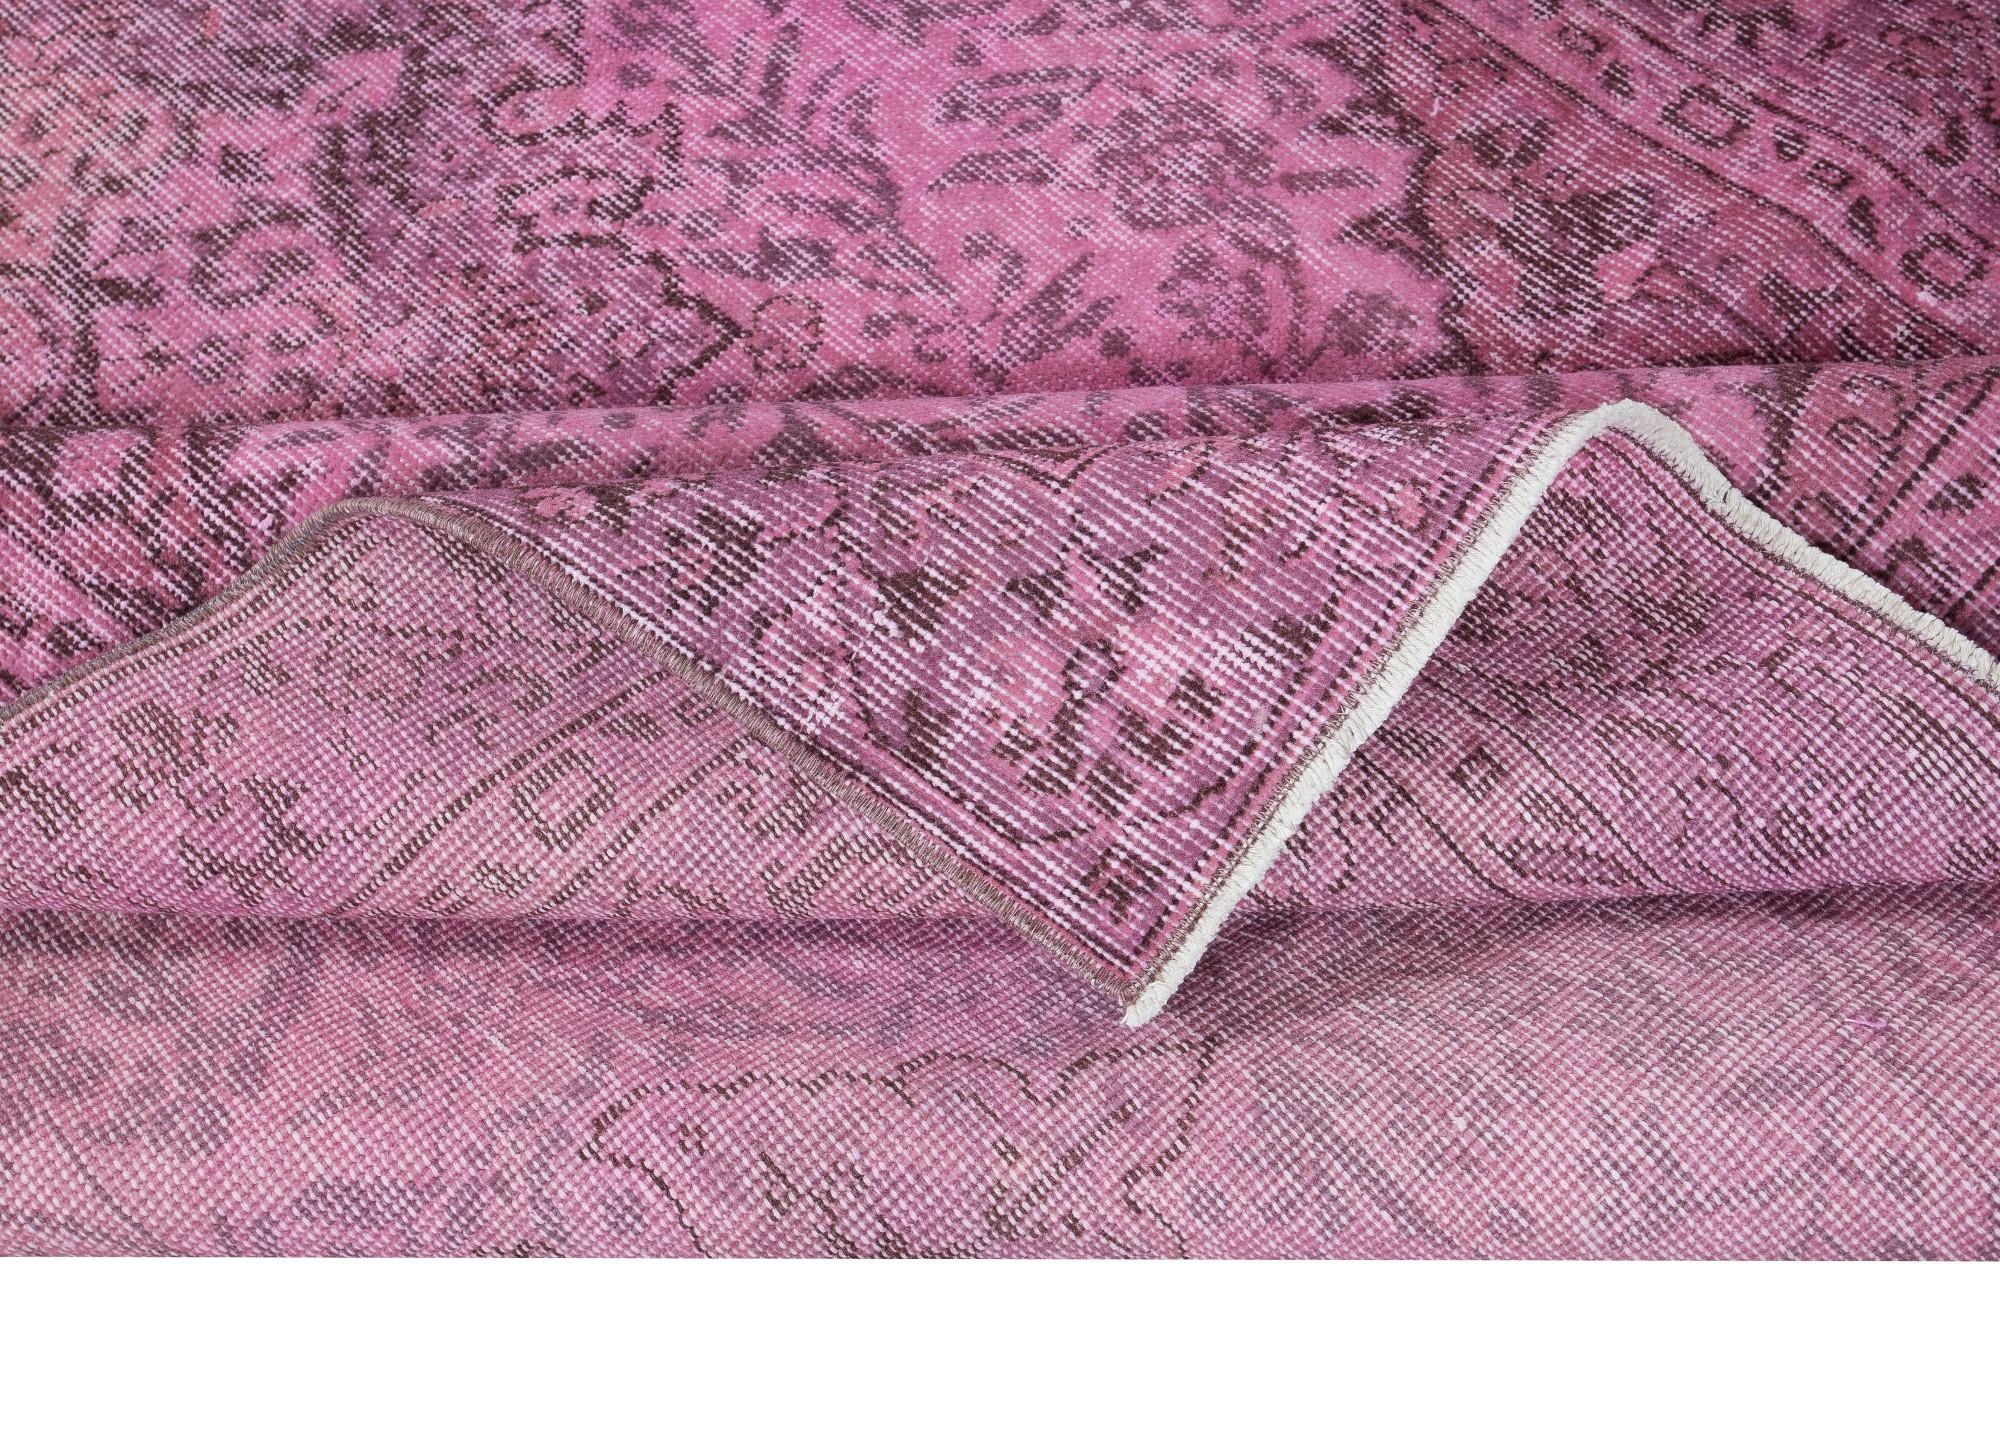 Turc 5x8.7 Ft Modernity Floor Area Rug in Pink, Handwoven and Handknotted in Turkey (Tapis de sol moderne en rose, tissé et noué à la main en Turquie) en vente